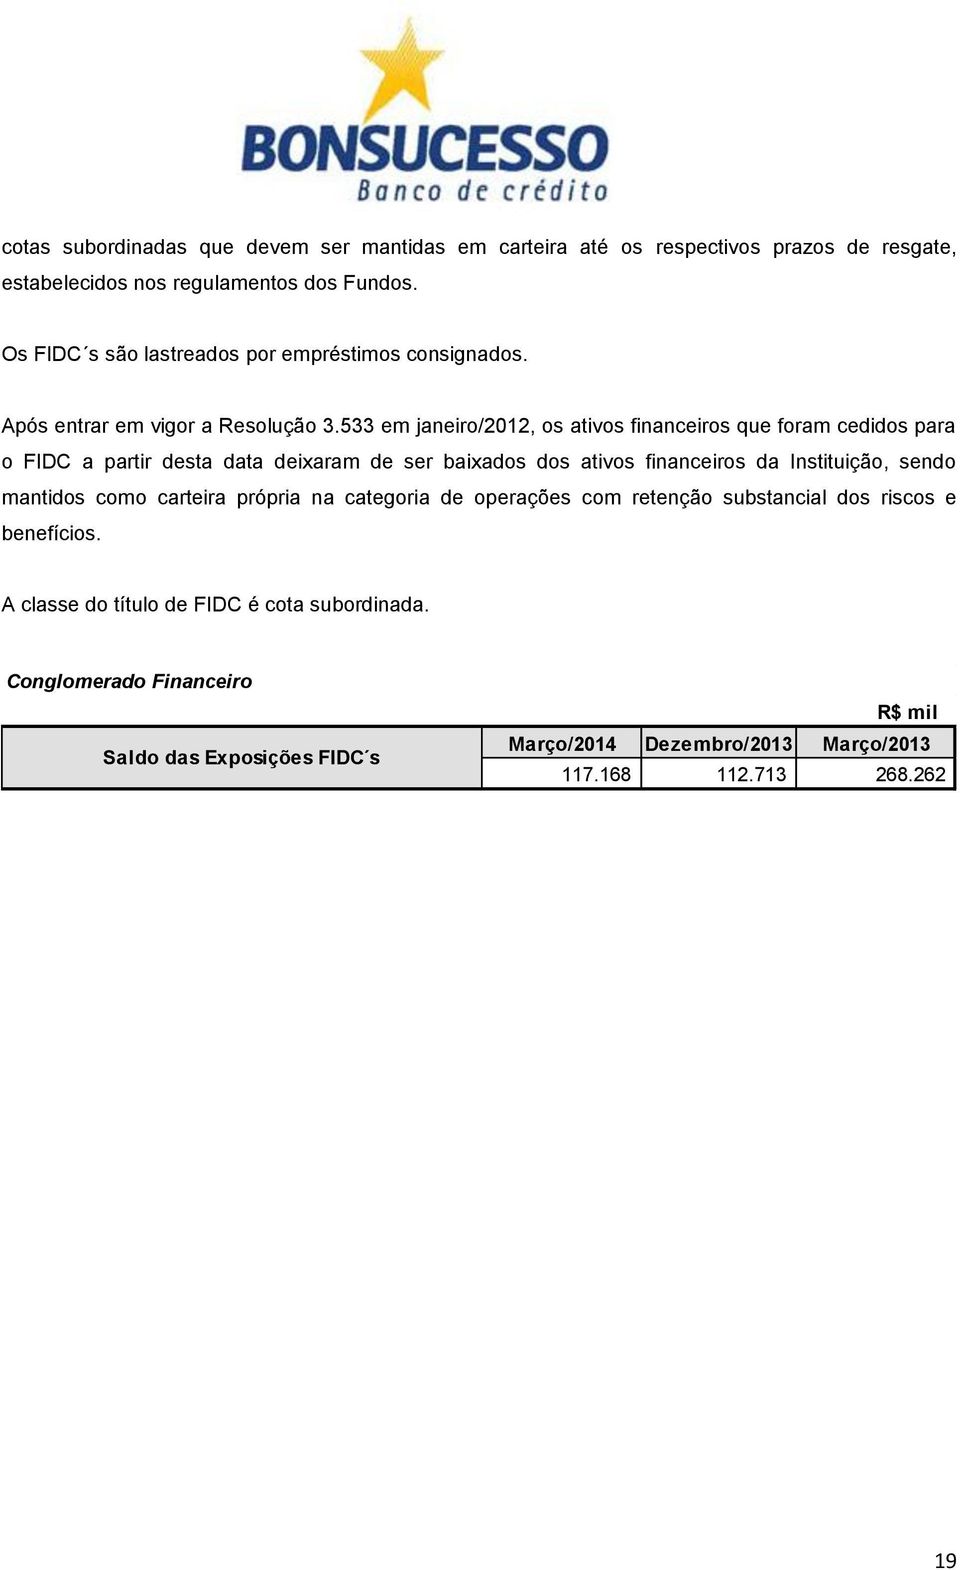 533 em janeiro/2012, os ativos financeiros que foram cedidos para o FIDC a partir desta data deixaram de ser baixados dos ativos financeiros da Instituição, sendo